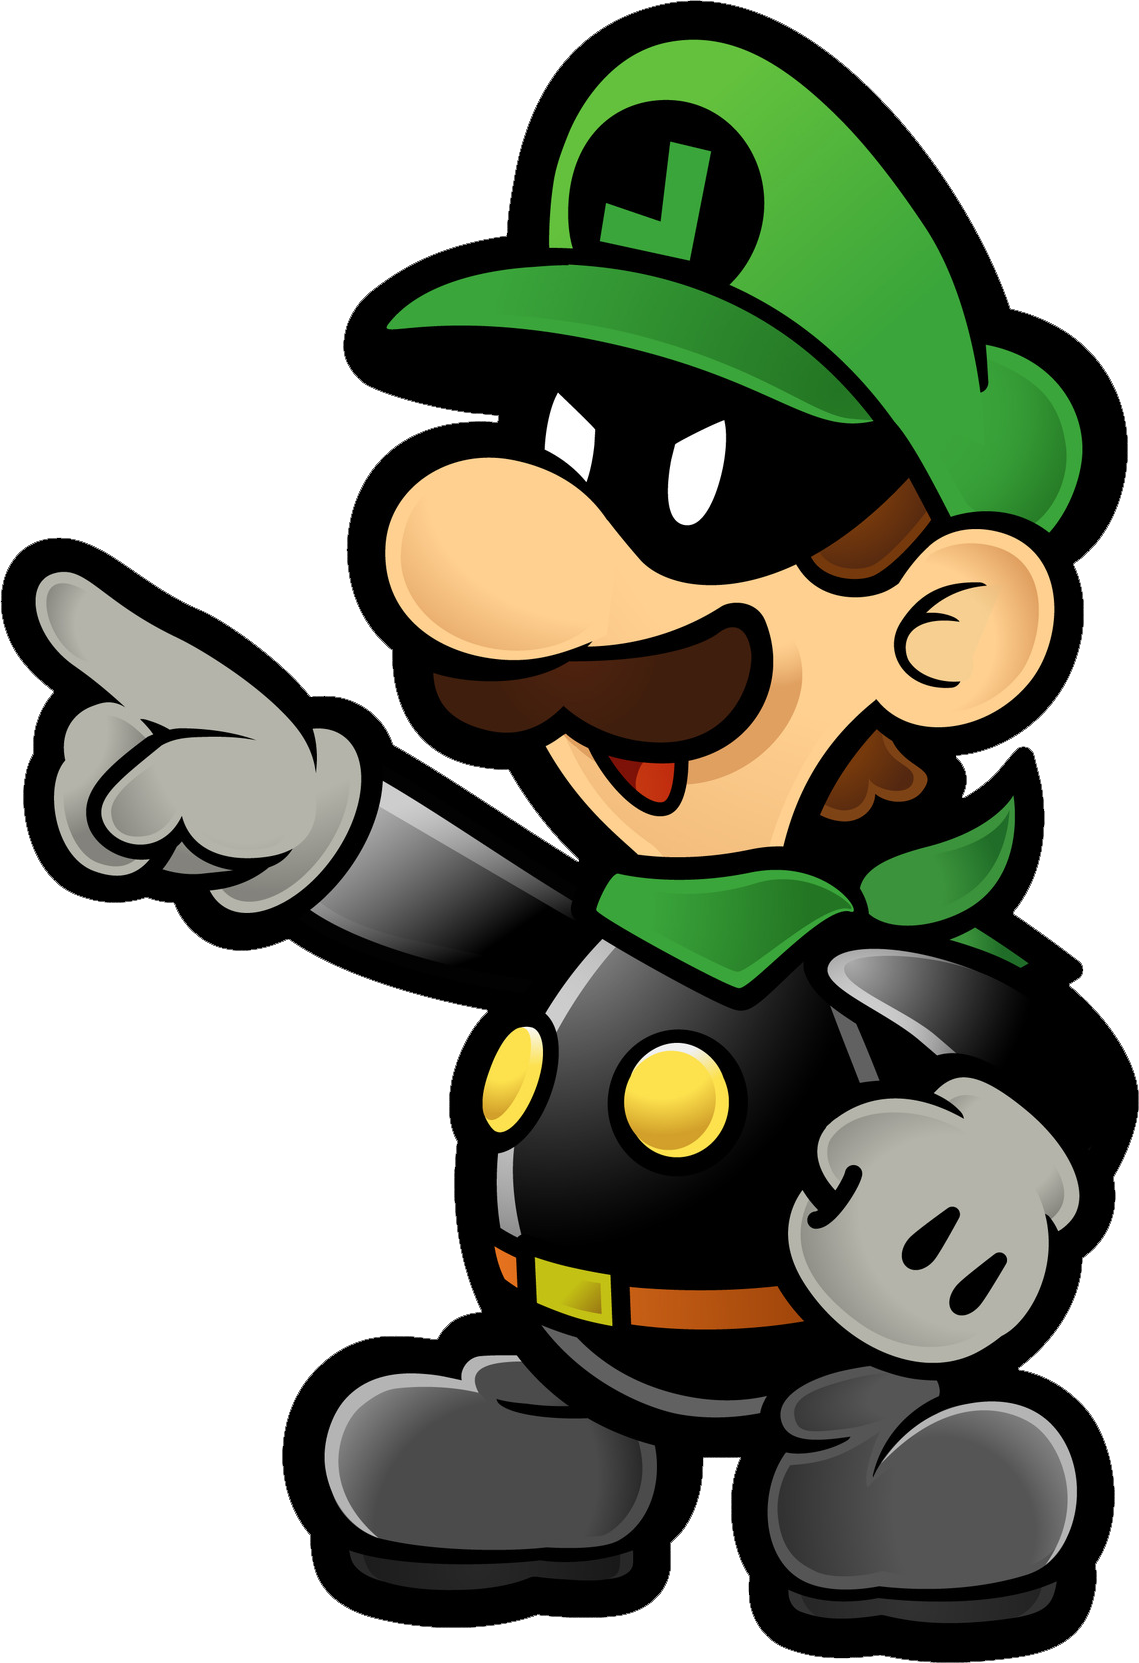 Paper Bowser - Super Mario Wiki, the Mario encyclopedia